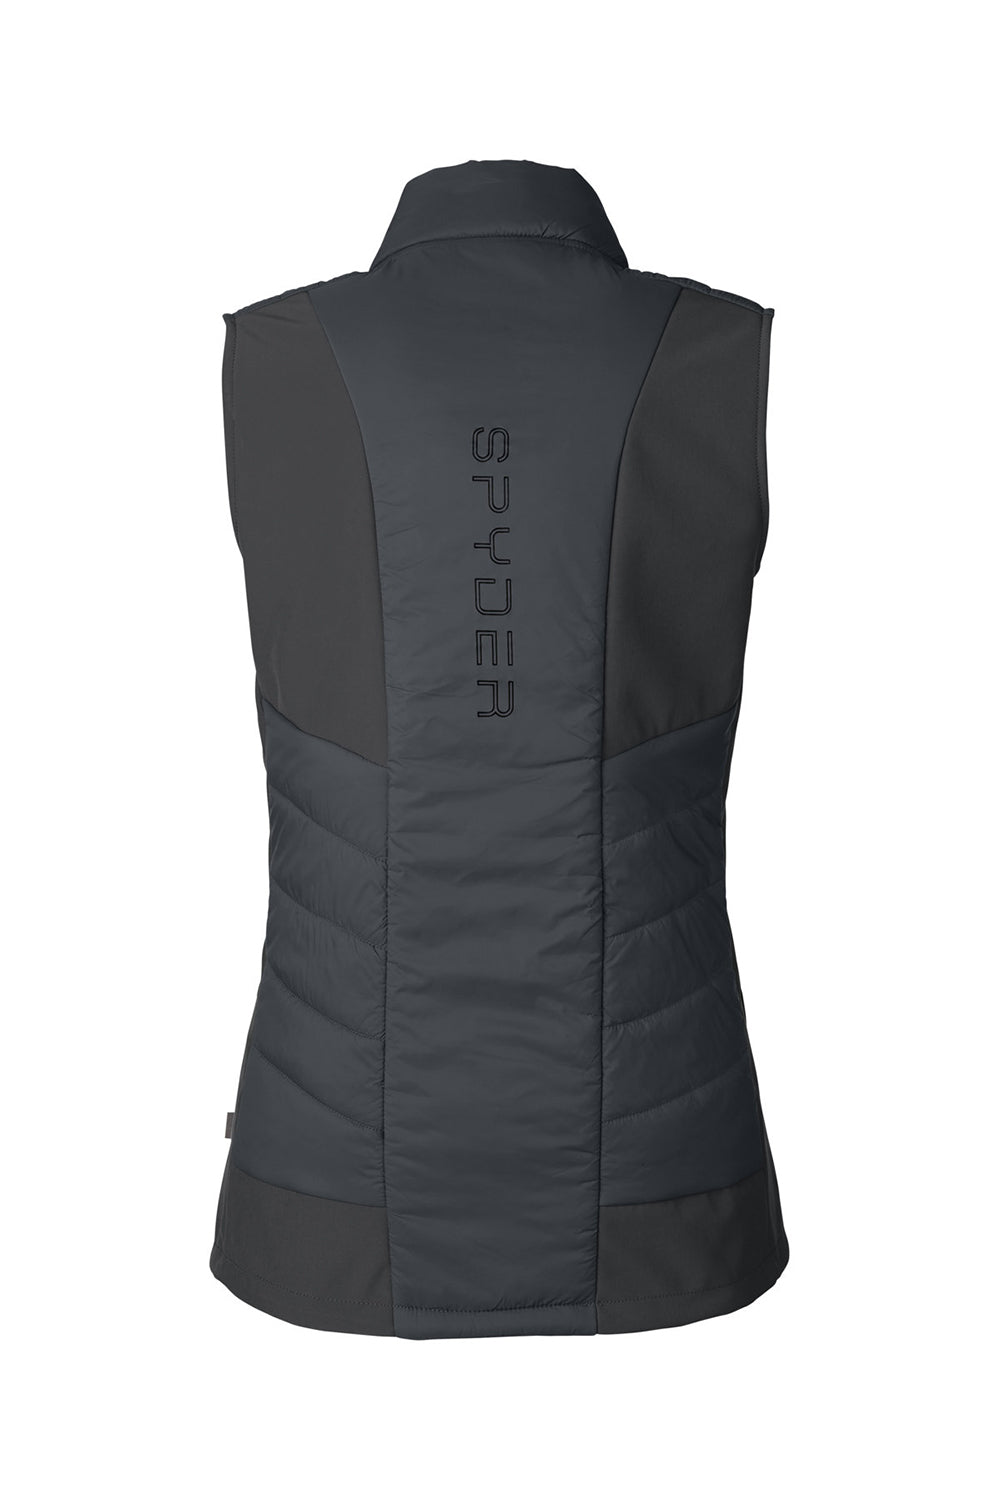 Spyder S17930 Womens Challenger Full Zip Vest Black Flat Back